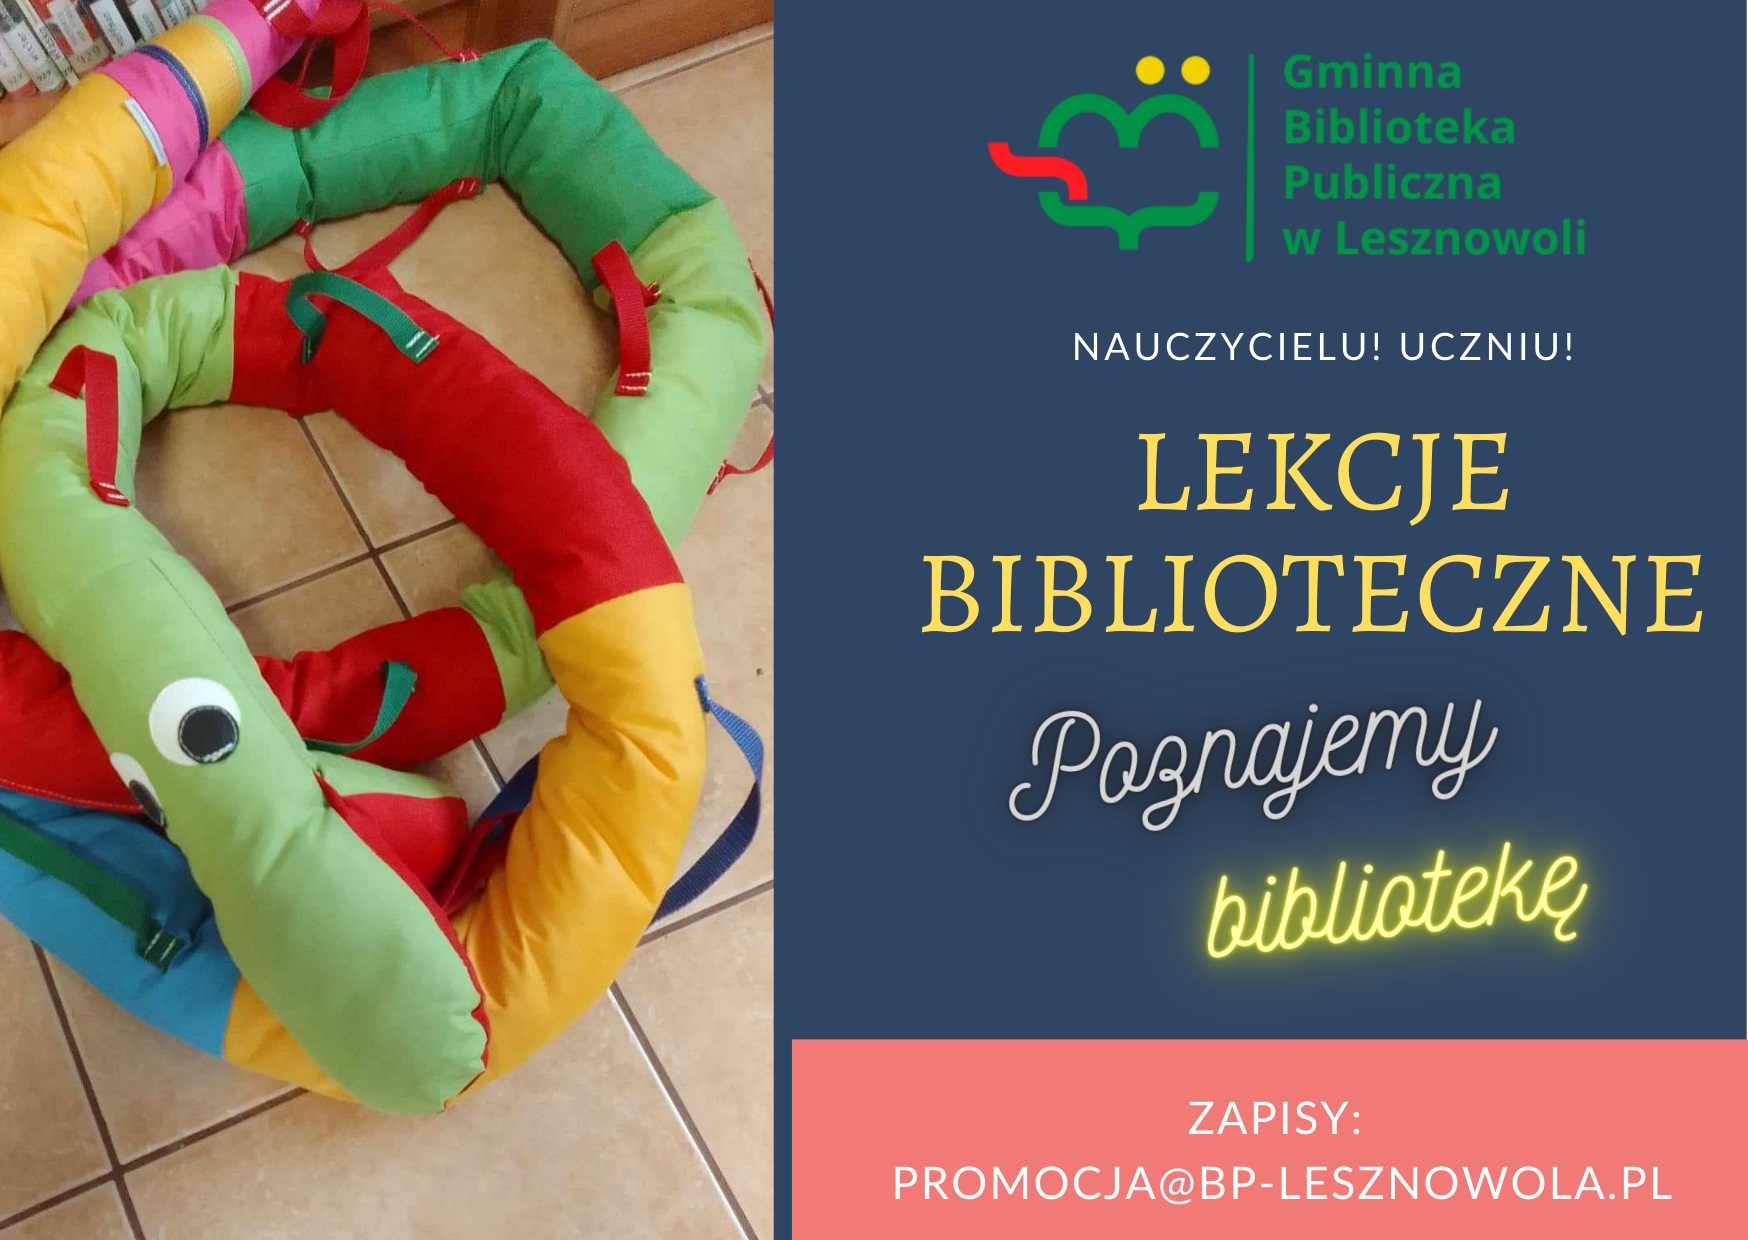 You are currently viewing Lekcja biblioteczna w bibliotece w Łazach